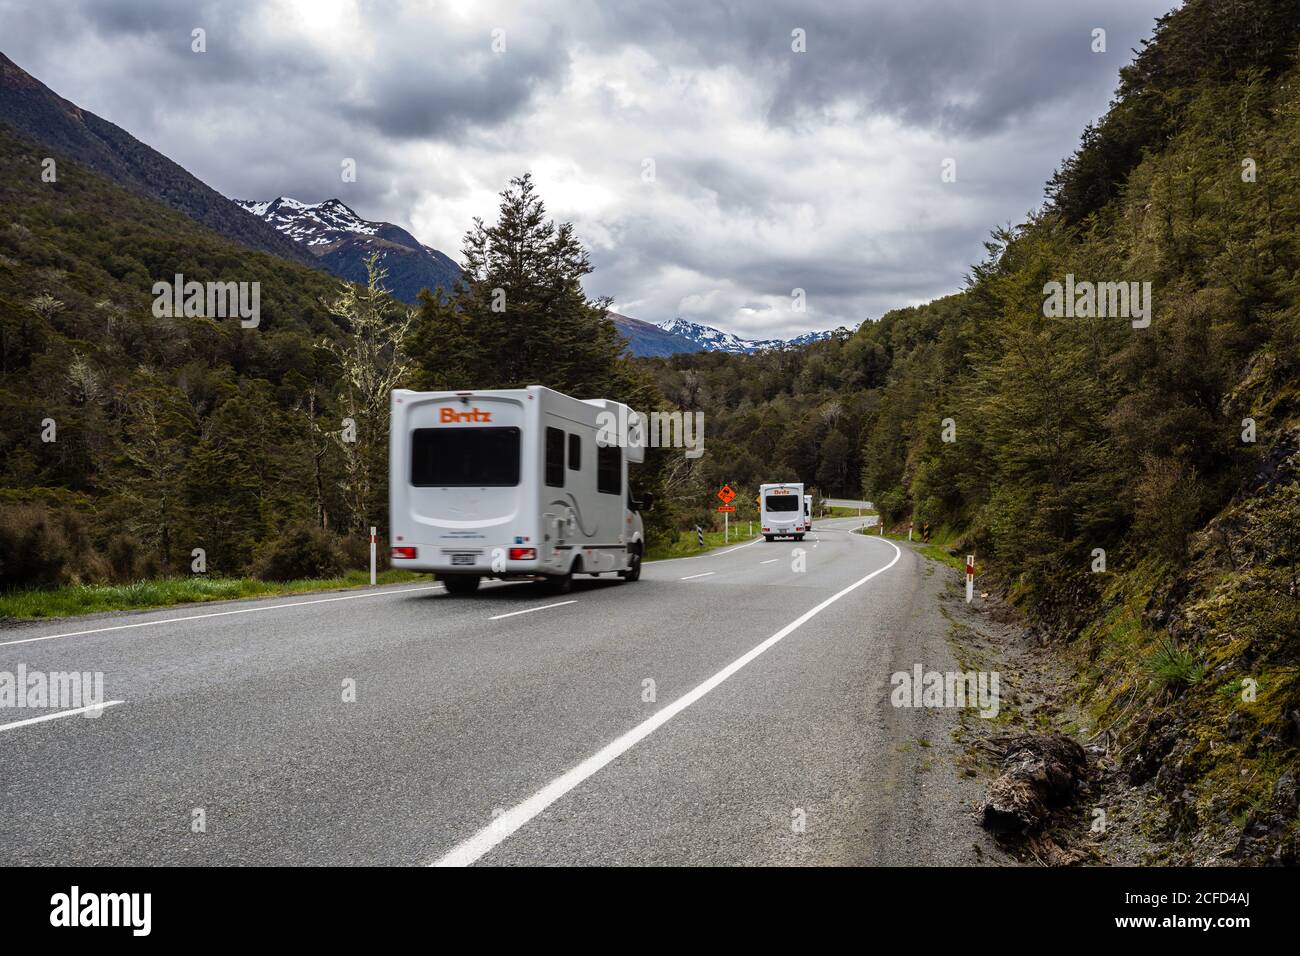 Autoroute 7 avec caravane et panneau de signalisation, South Island Nouvelle-Zélande Banque D'Images